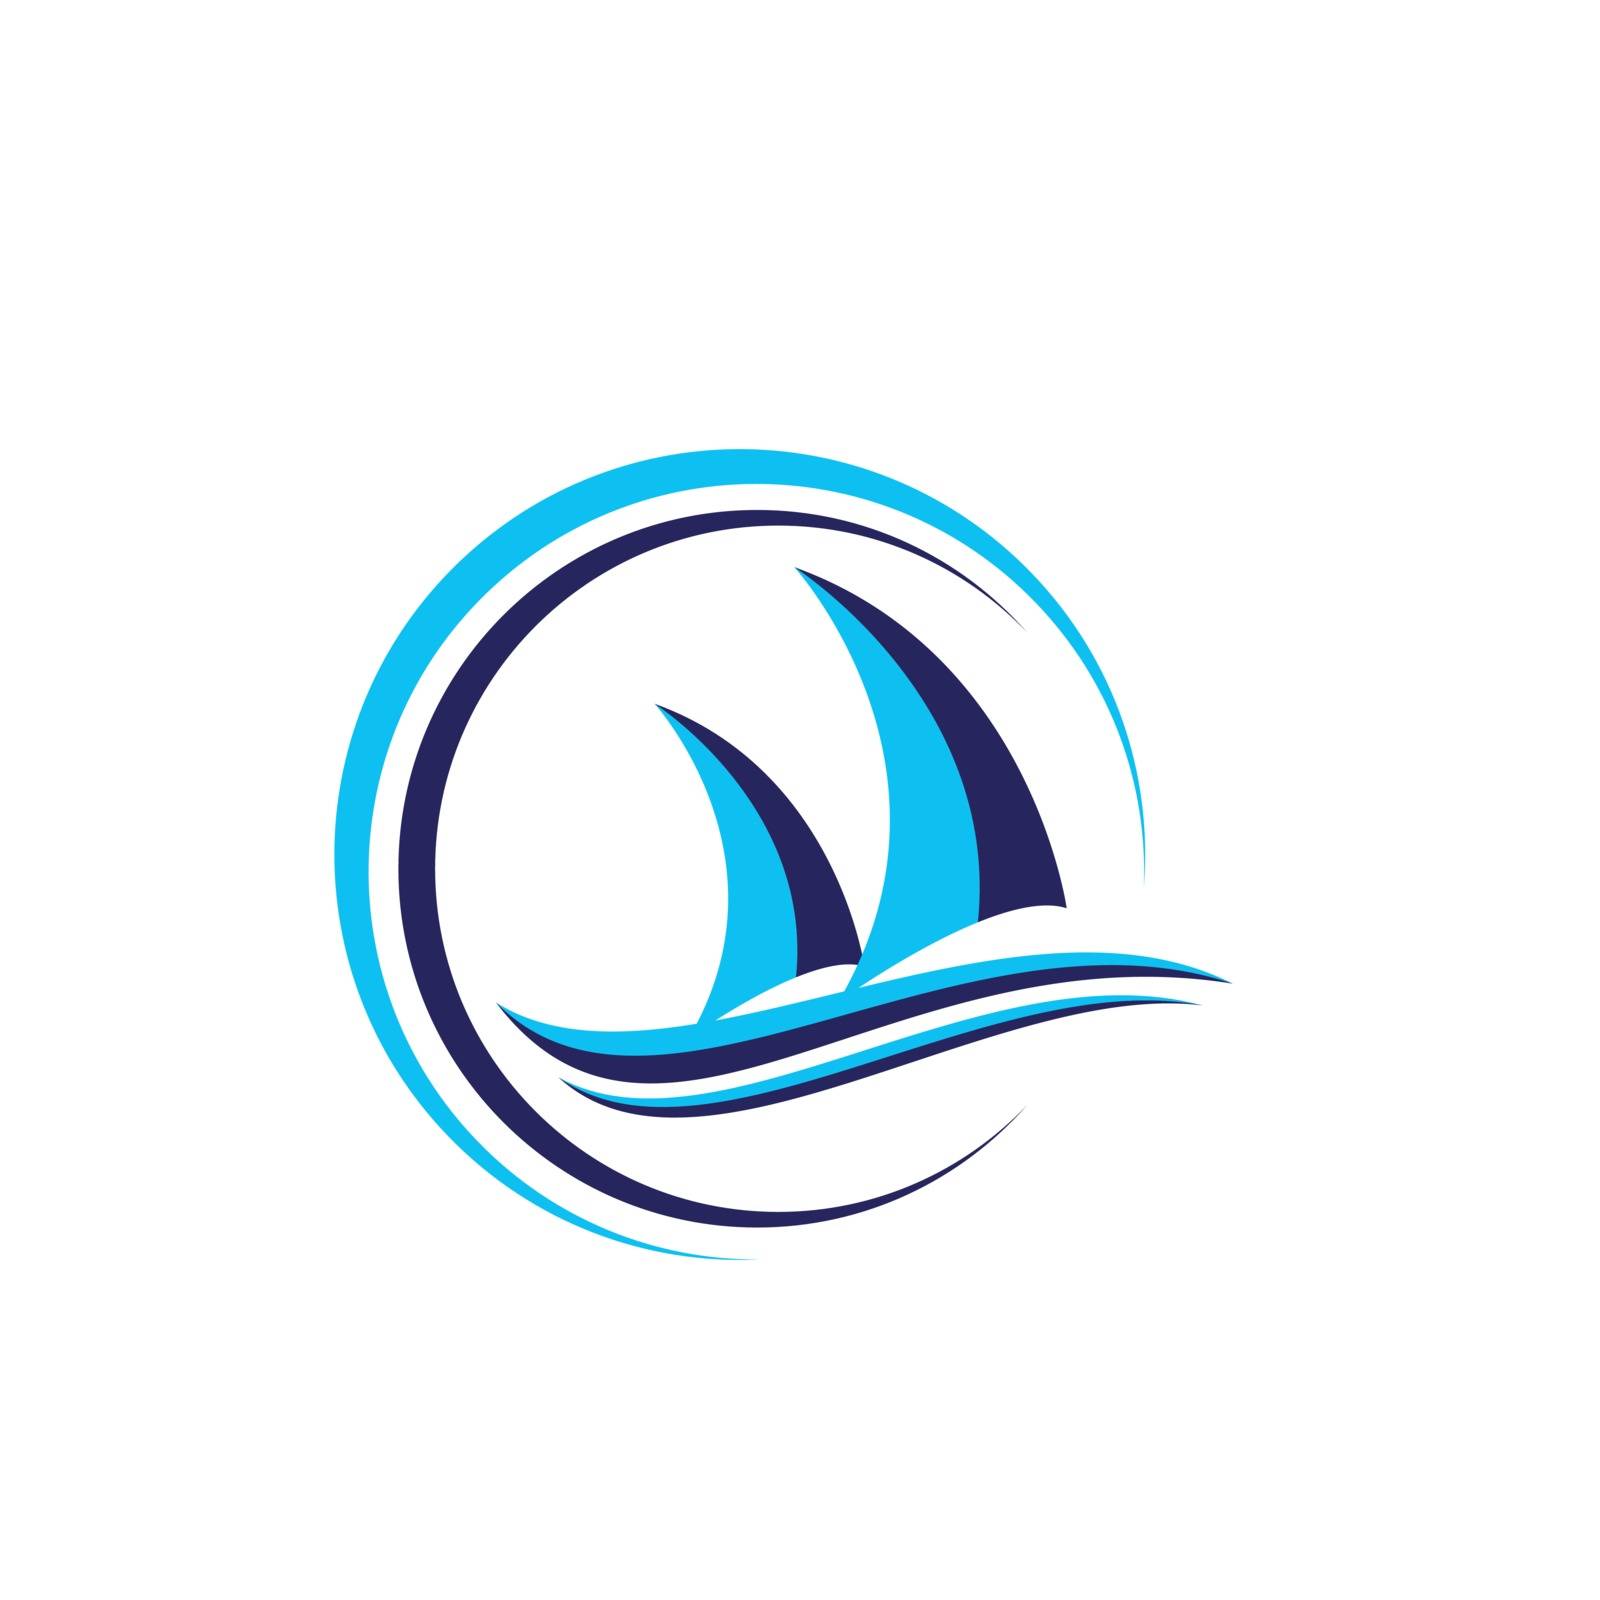 Ship logo nautical sailing boat icon vector design boat ship sea logo Cruise ship Logo Template vector icon illustration design